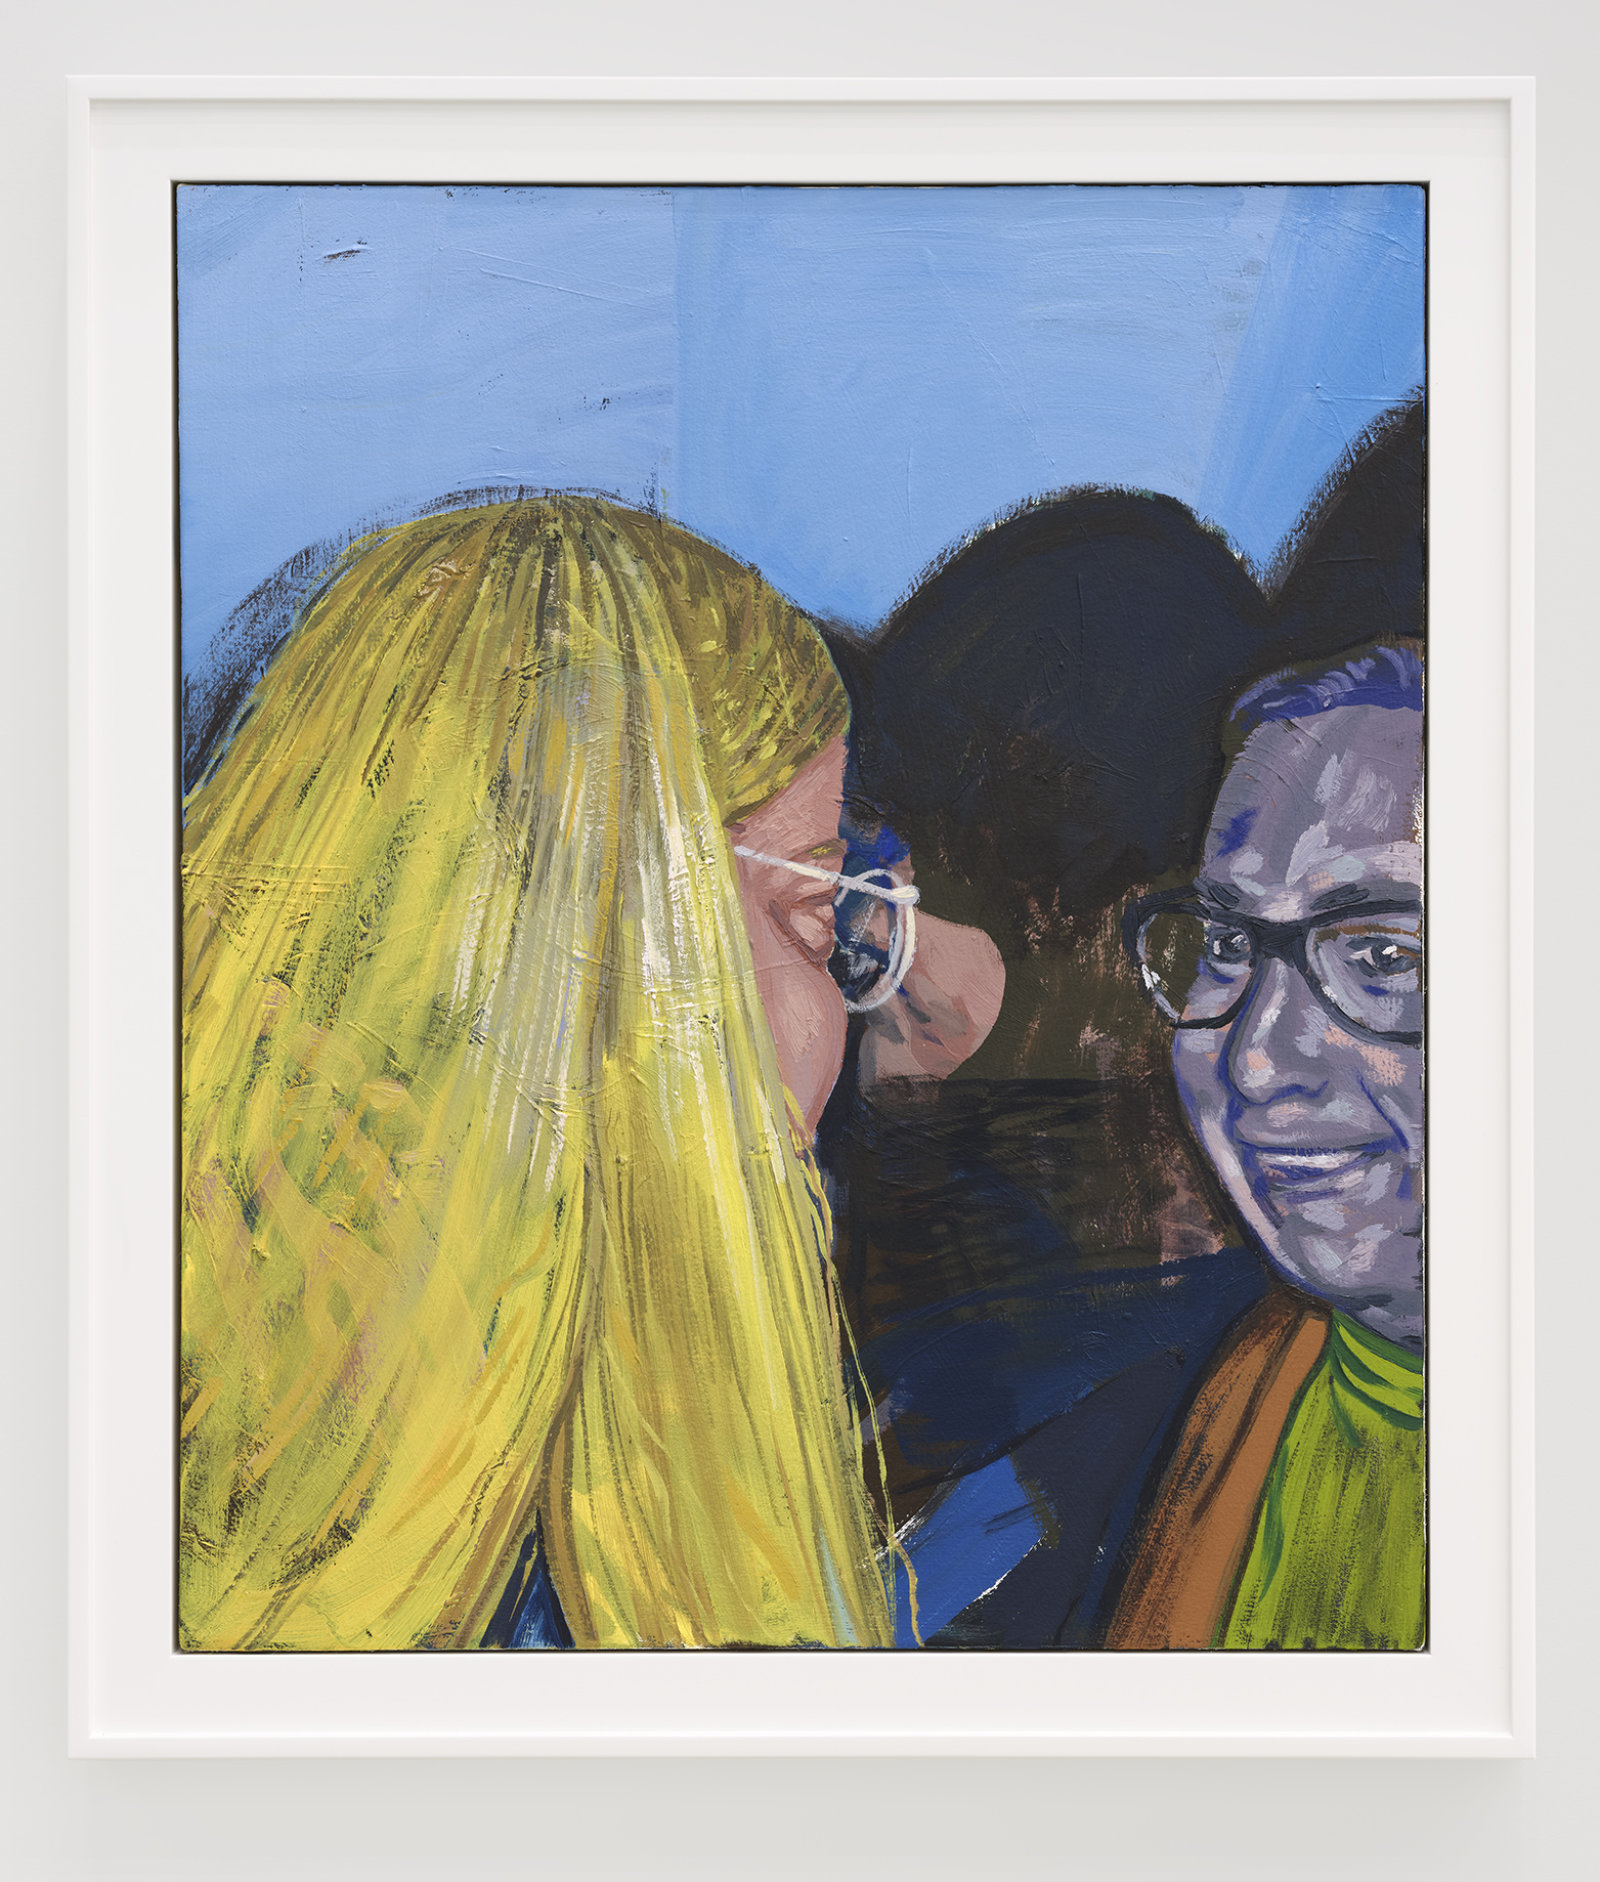 Damian Moppett, Little Blonde Head, 2020, oil on canvas, 32 x 27 in. (81 x 69 cm)